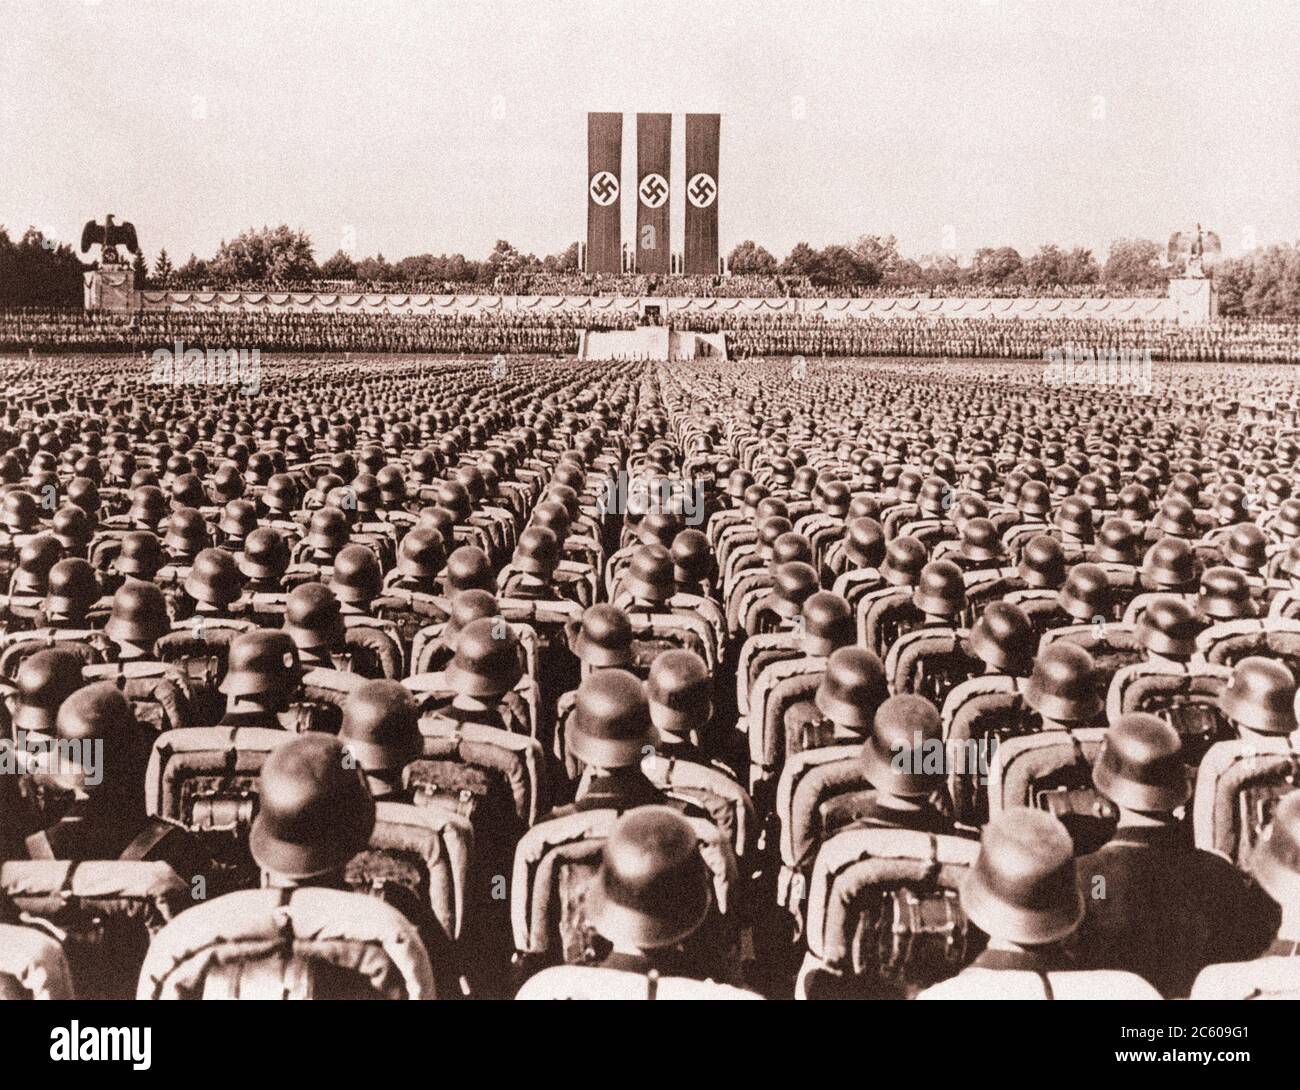 Nuremberg 1930 Waffen-SS tropas en cascos pulidos en fila serried preciso un puesto de saludo durante una manifestación nazi alemán Foto de stock